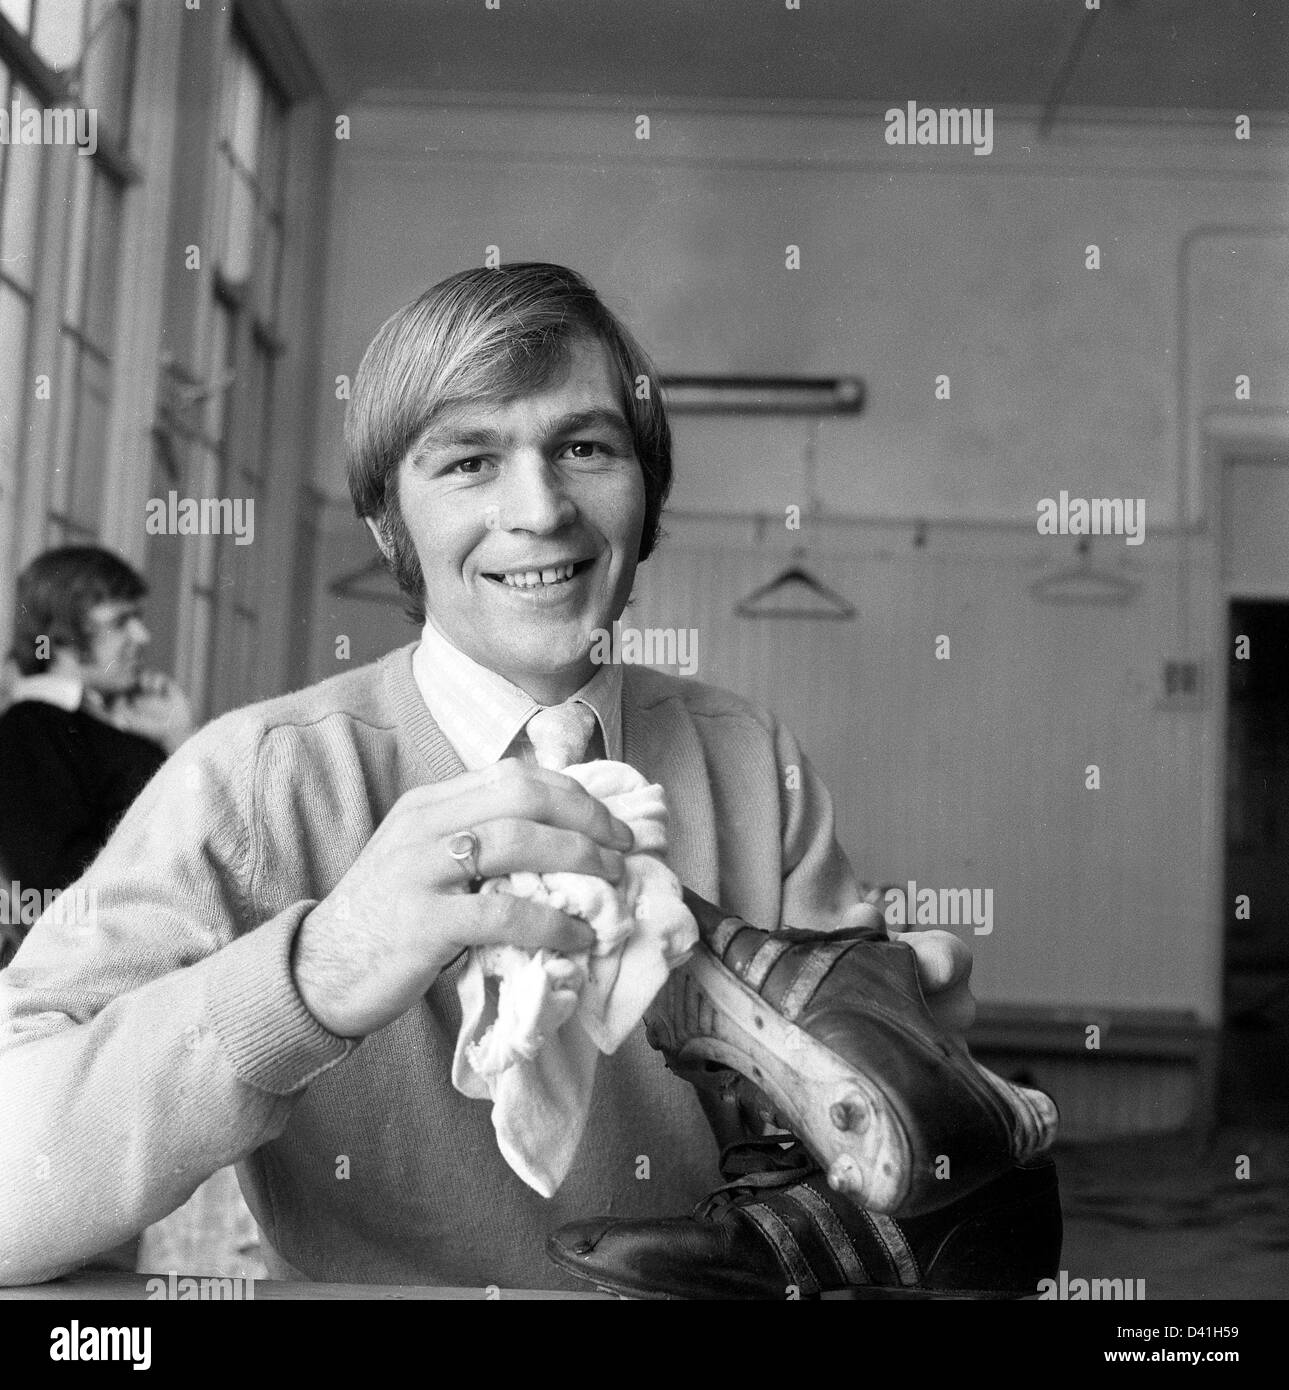 Ian Ross Aston Villa footballer cleaning his boots1971 Stock Photo